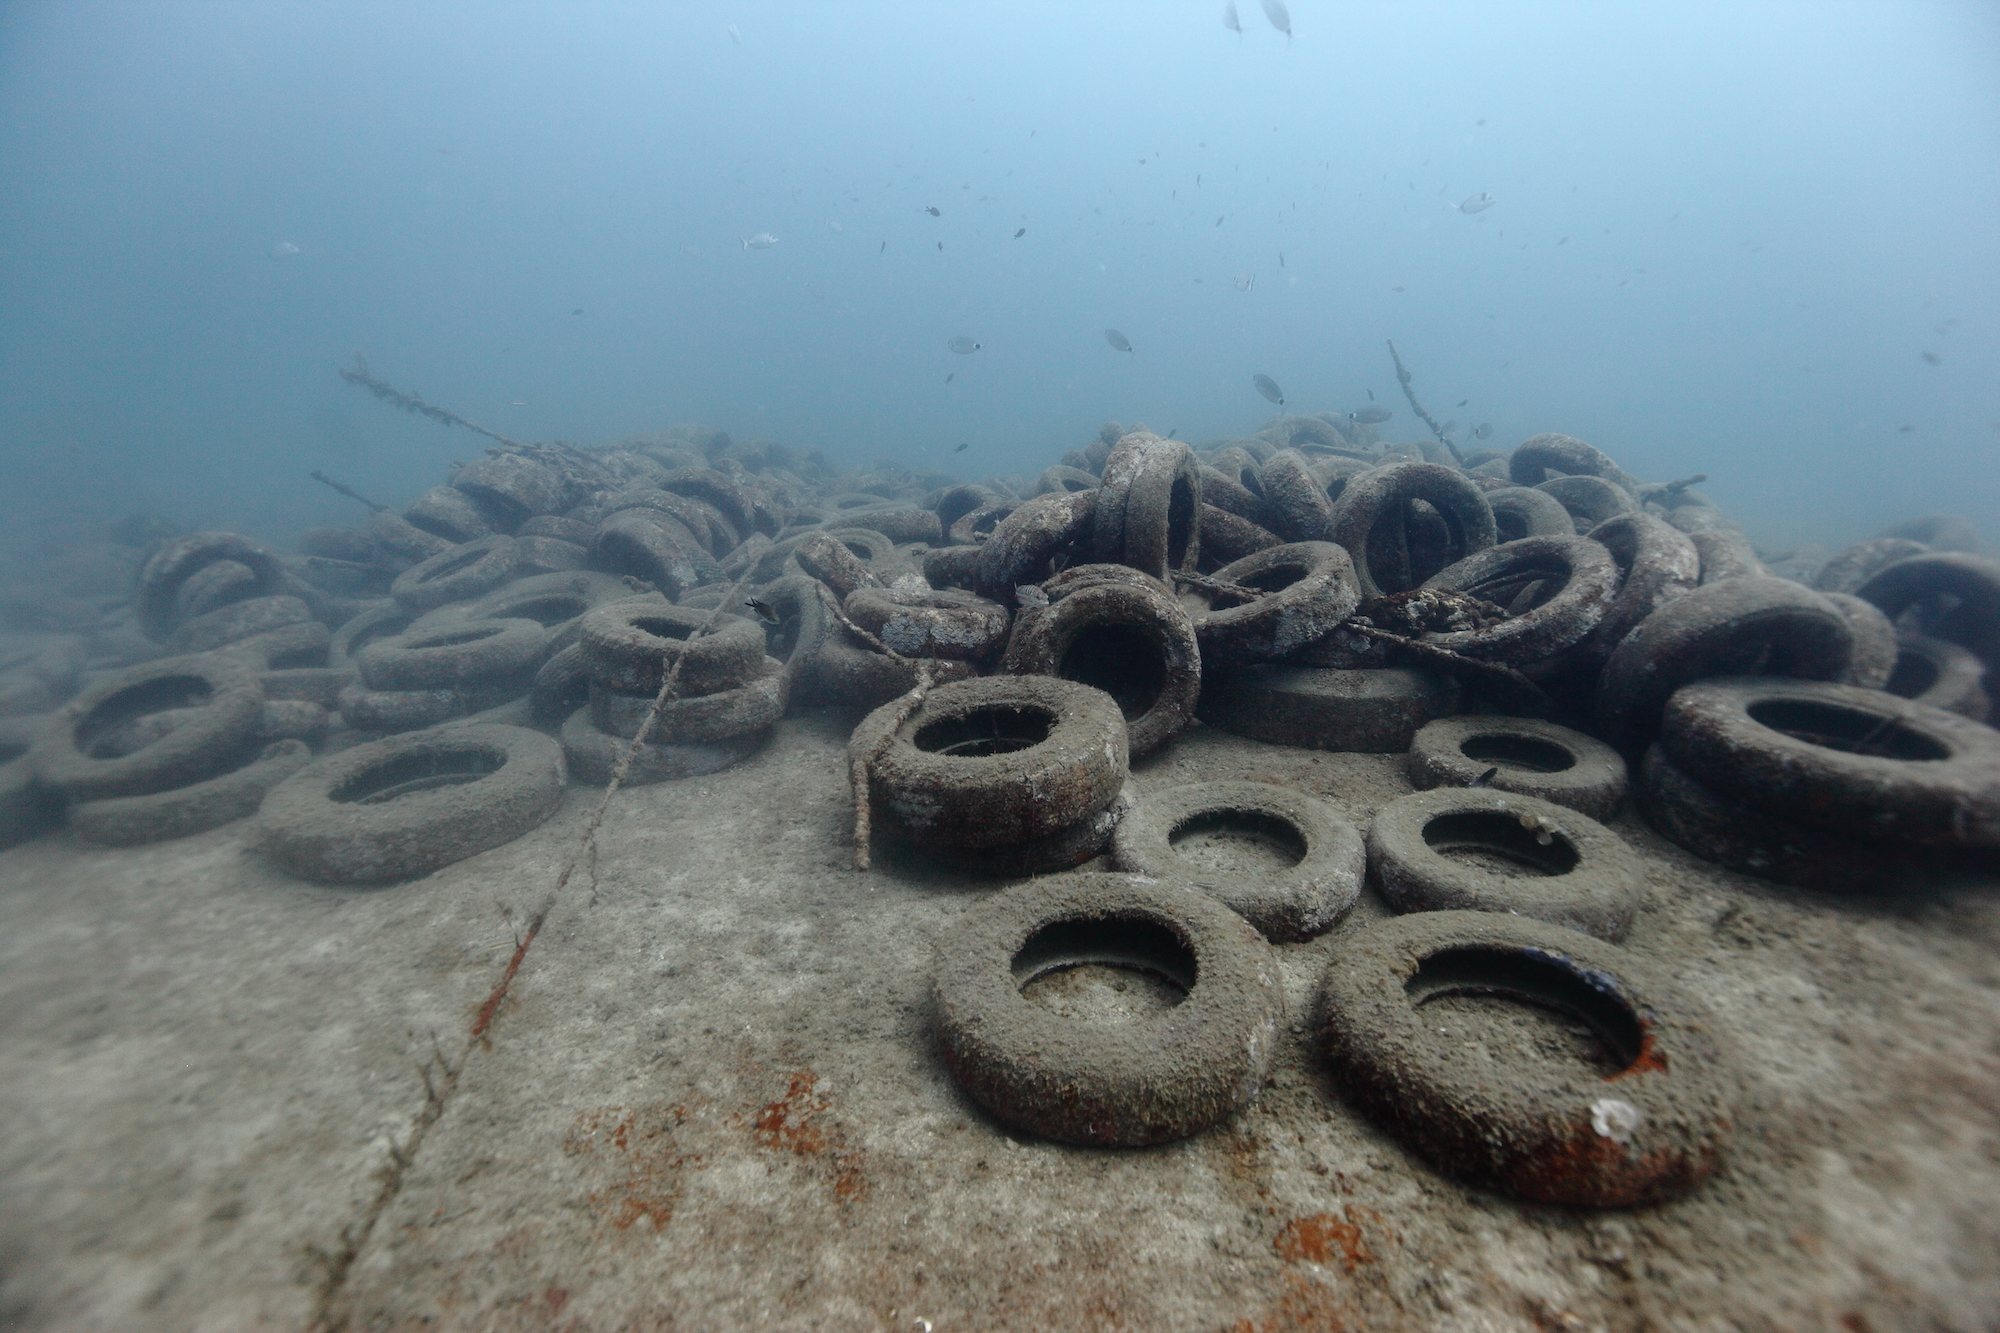 Les récifs en pneus n’ont pas résisté à la houle et aux courants et se sont écroulés puis disséminés. © Jérôme Espla / Poisson-Lune Productions